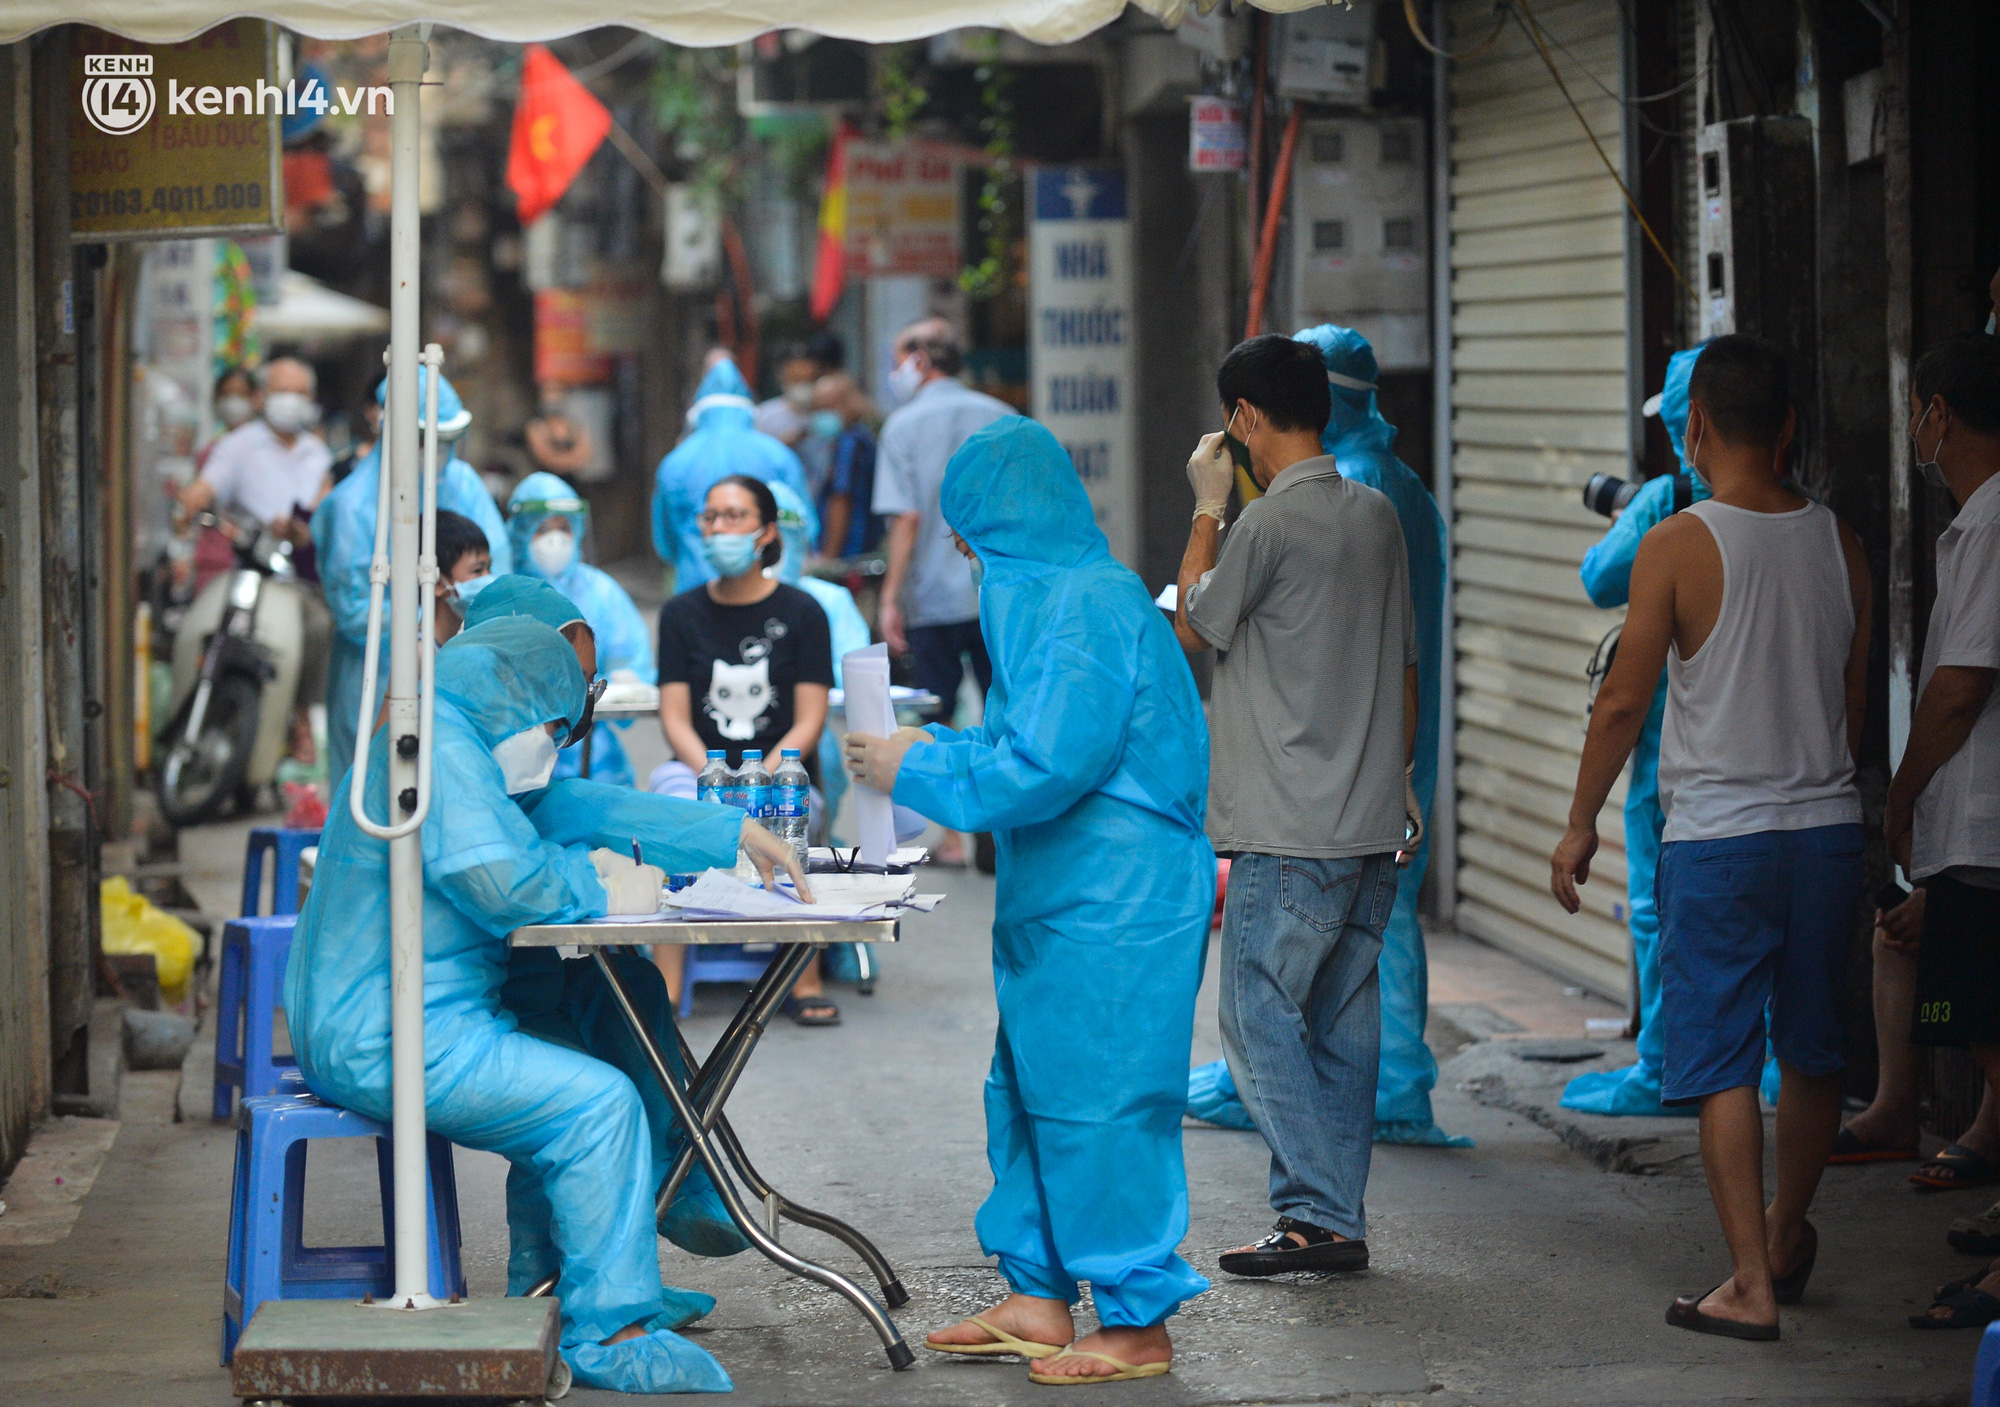 Ảnh: Lấy mẫu xét nghiệm cho 5.000 người trong 2 khu dân cư ở Hà Nội vì liên quan chùm ca bệnh Covid-19 - Ảnh 12.